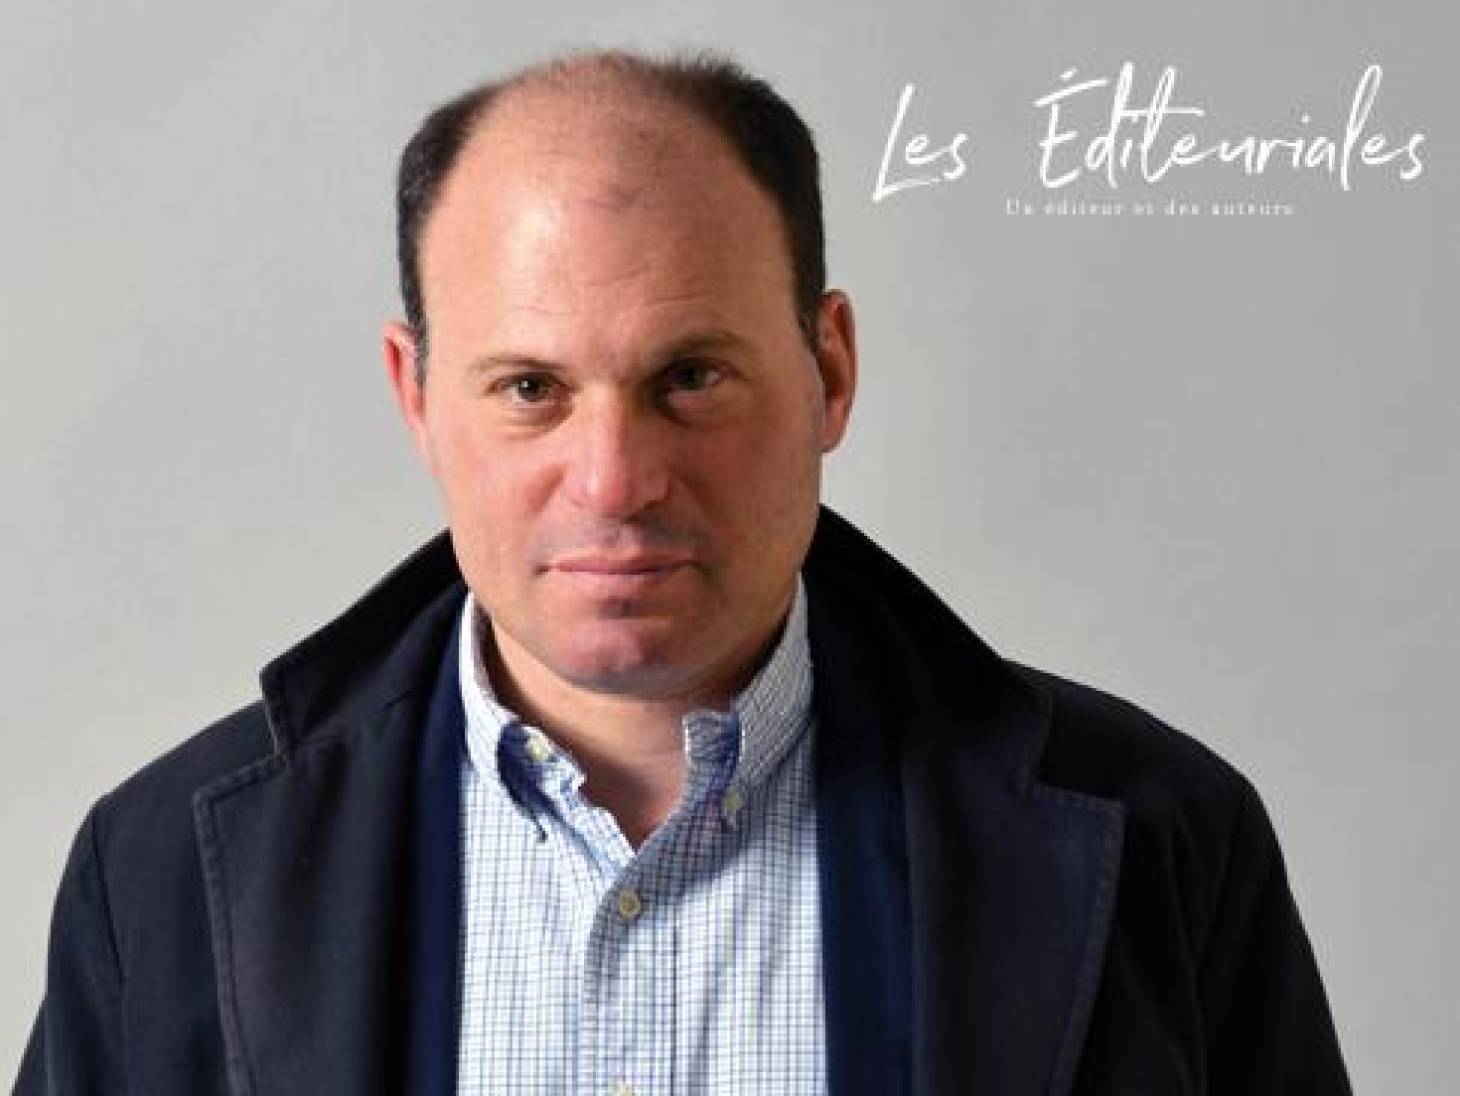 Manuel Carcassonne : « L'édition est une industrie de prototypes »